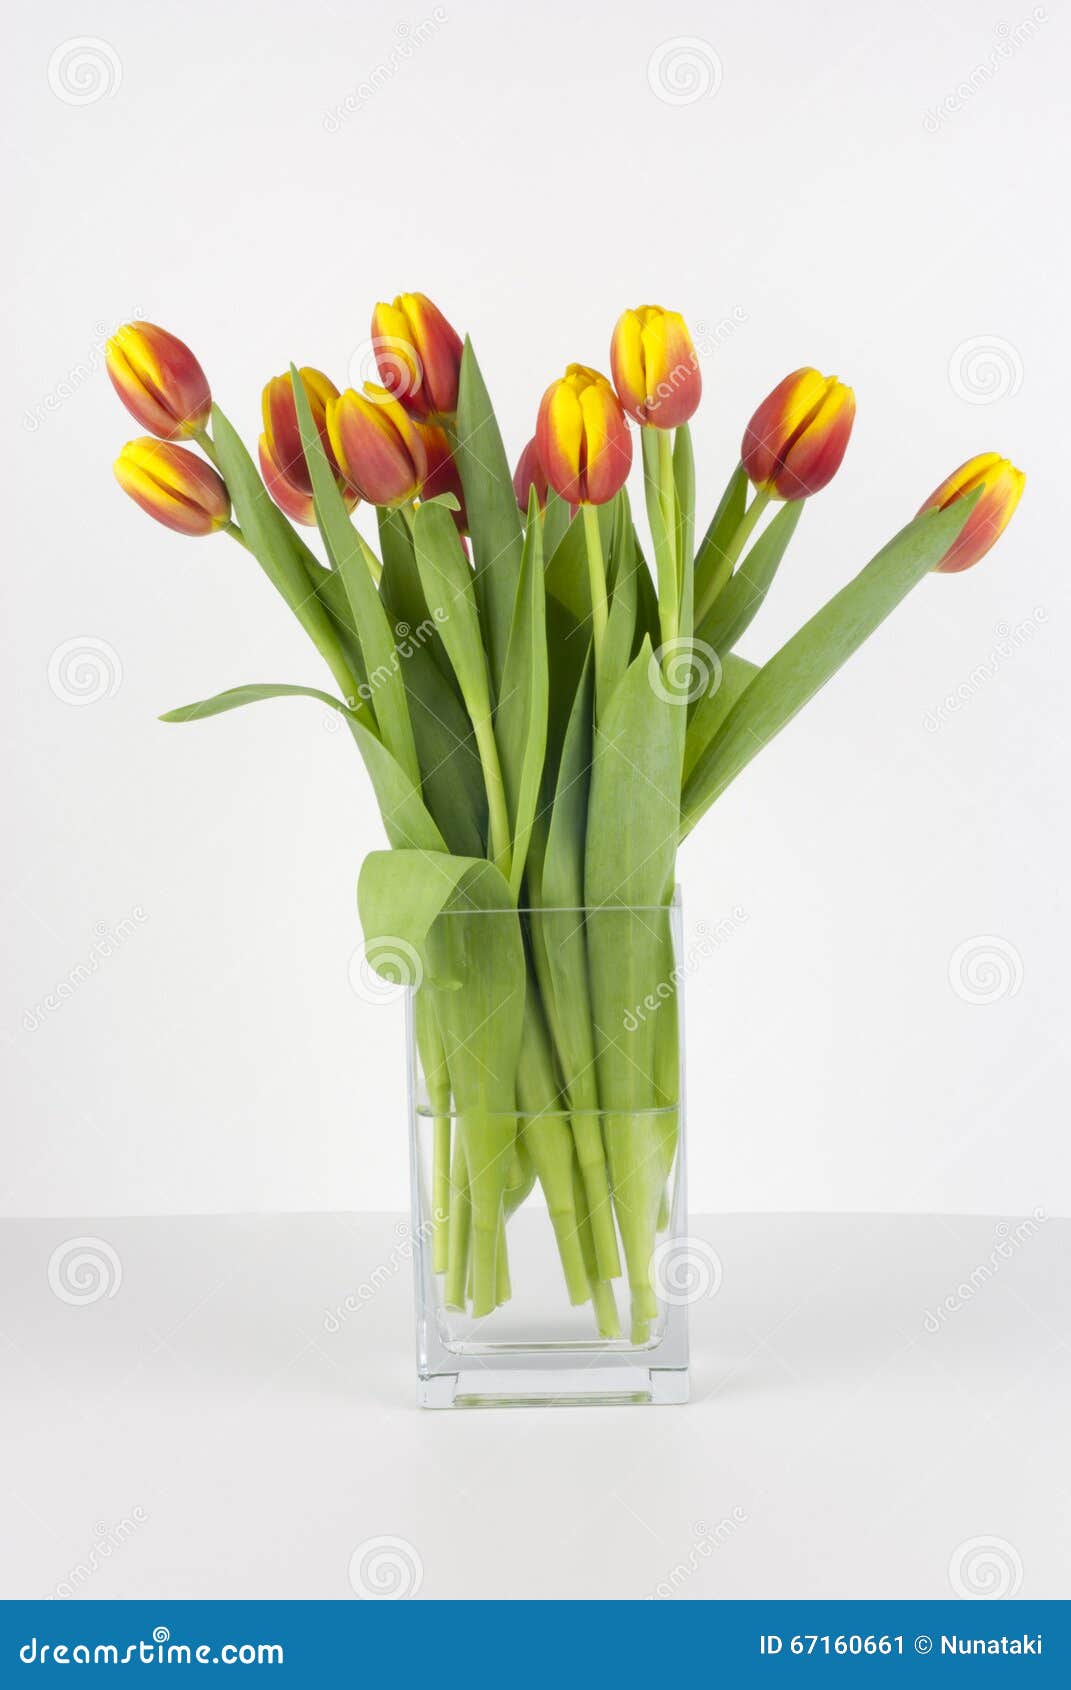 Можно ли подрезать тюльпаны. Подрезка тюльпанов в вазе. Подрезать тюльпаны. Подрезание тюльпанов в вазе. Как подрезать тюльпаны в вазе.